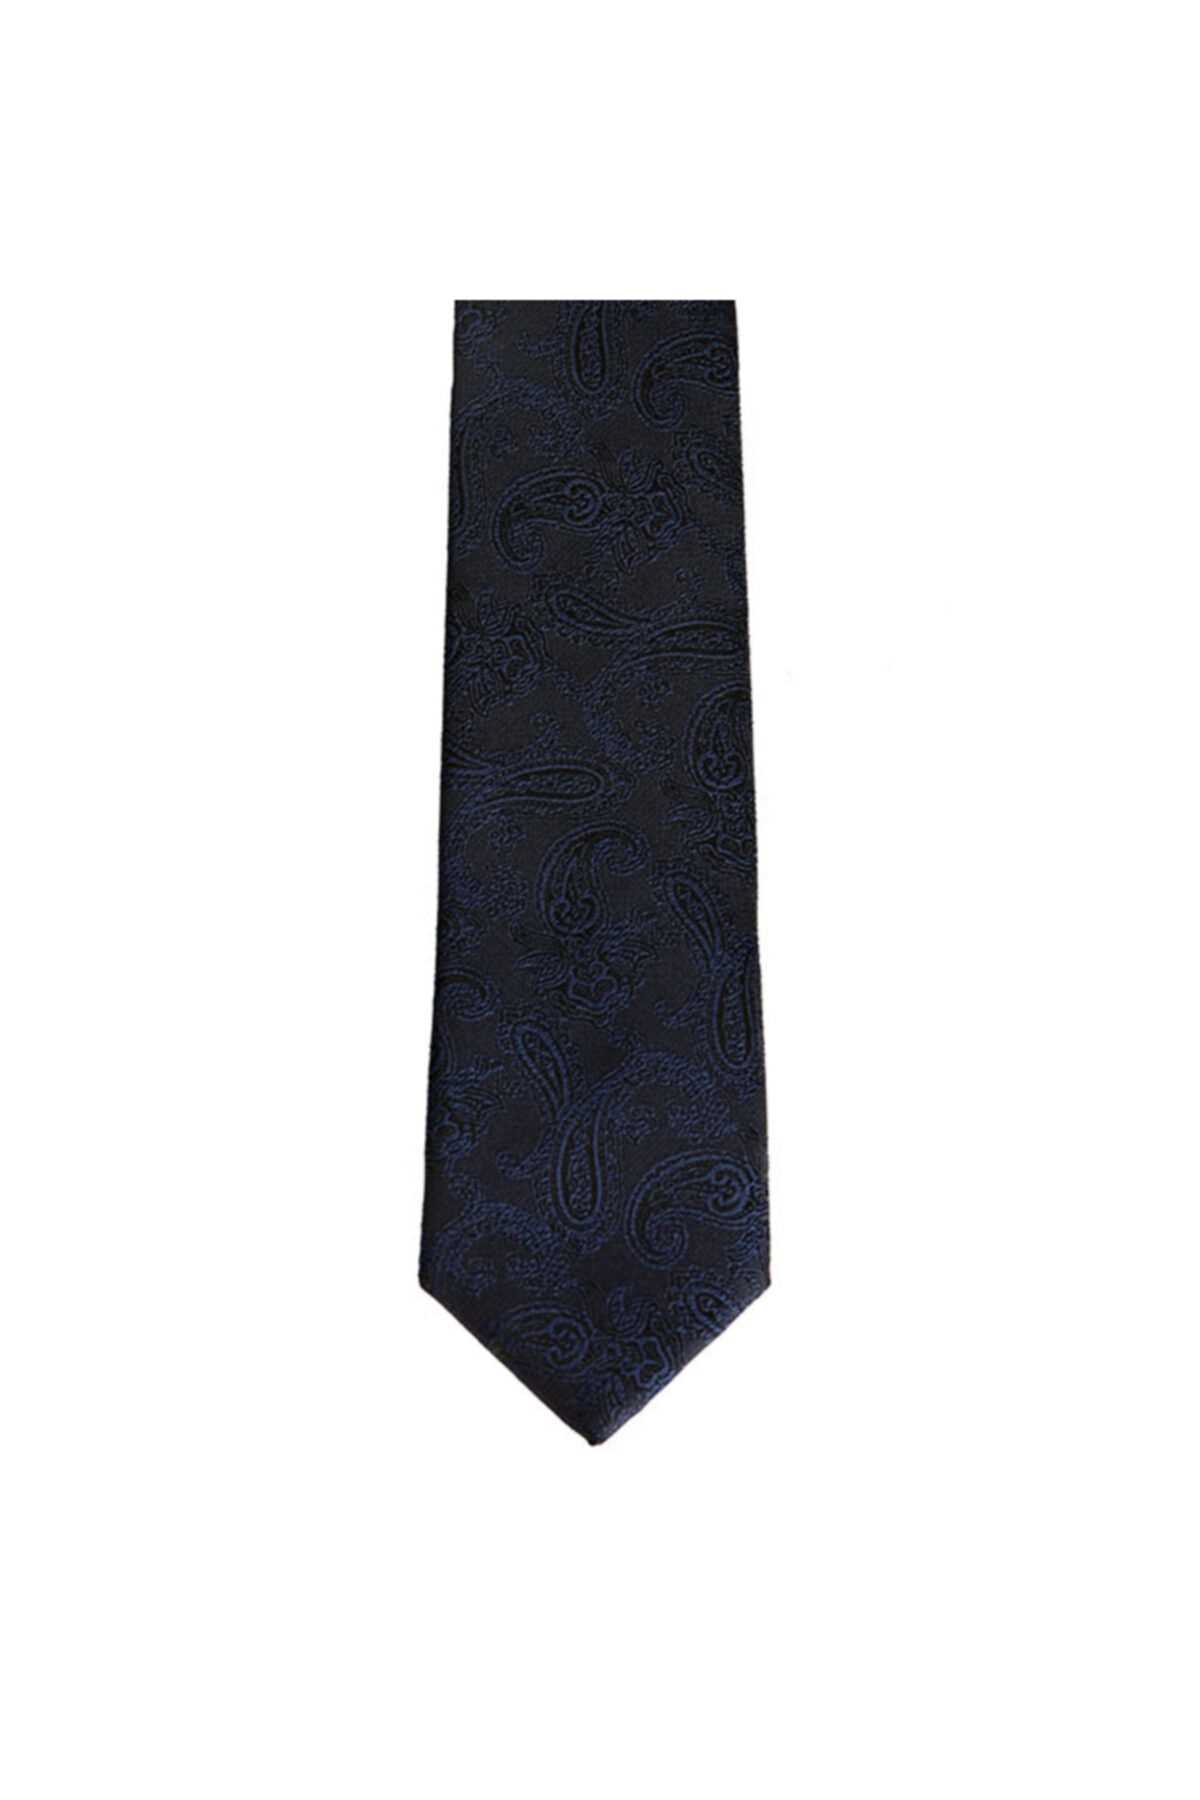 سفارش نقدی کراوات مردانه ارزان برند Brianze رنگ لاجوردی کد ty6279454